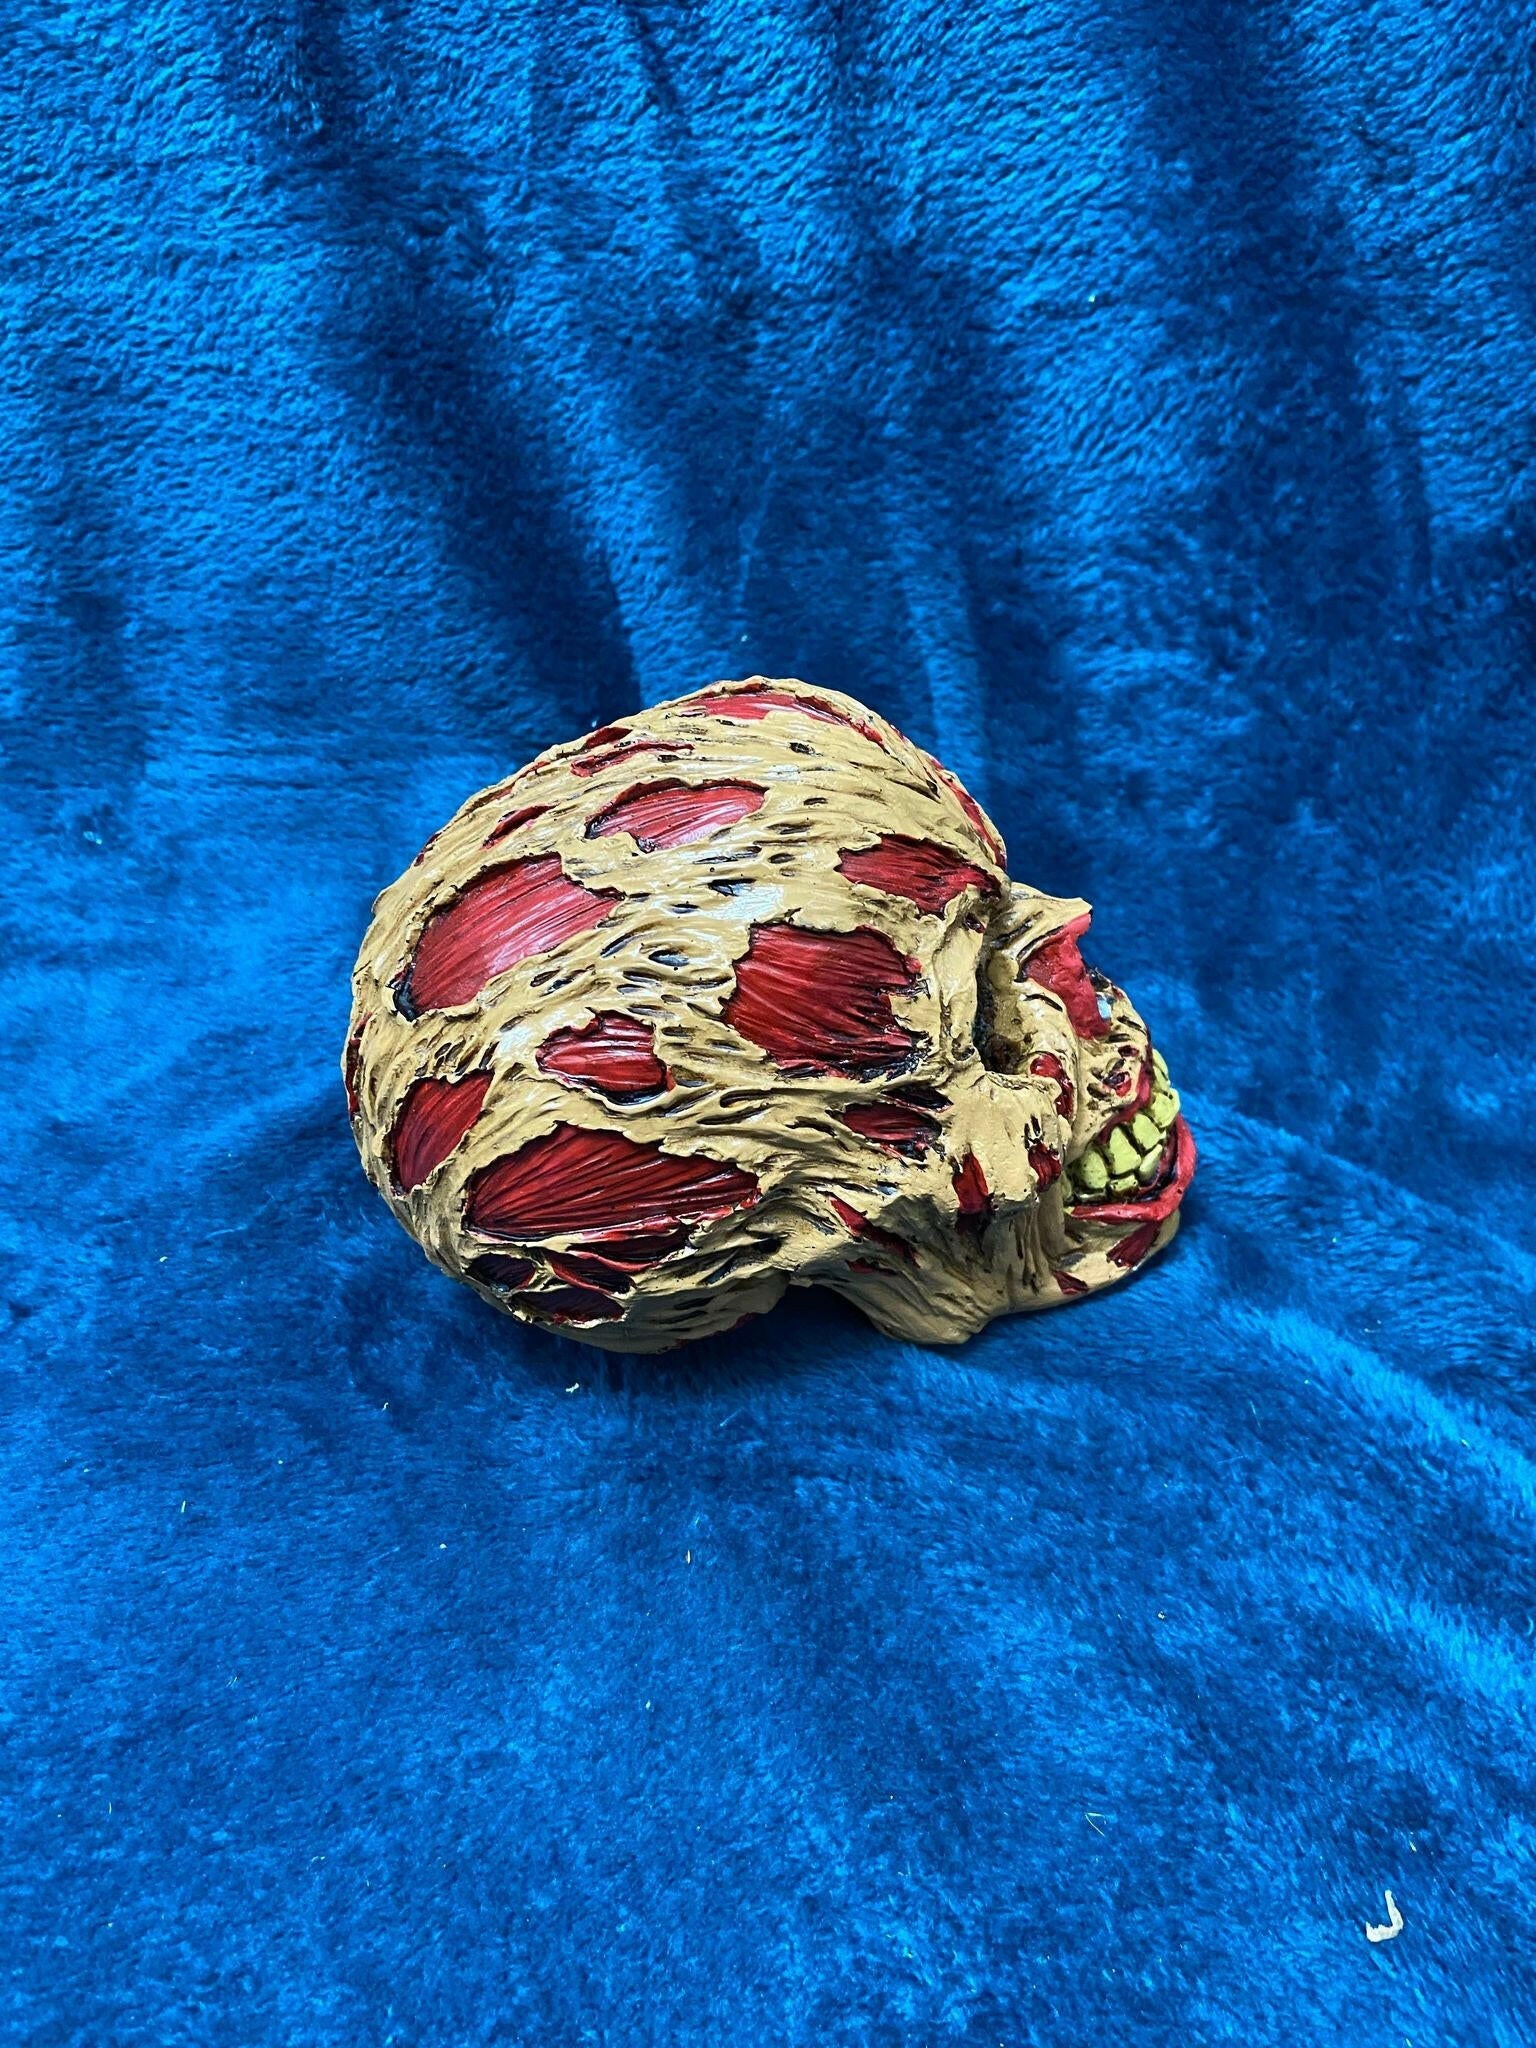 The Hoard Skull Ornament